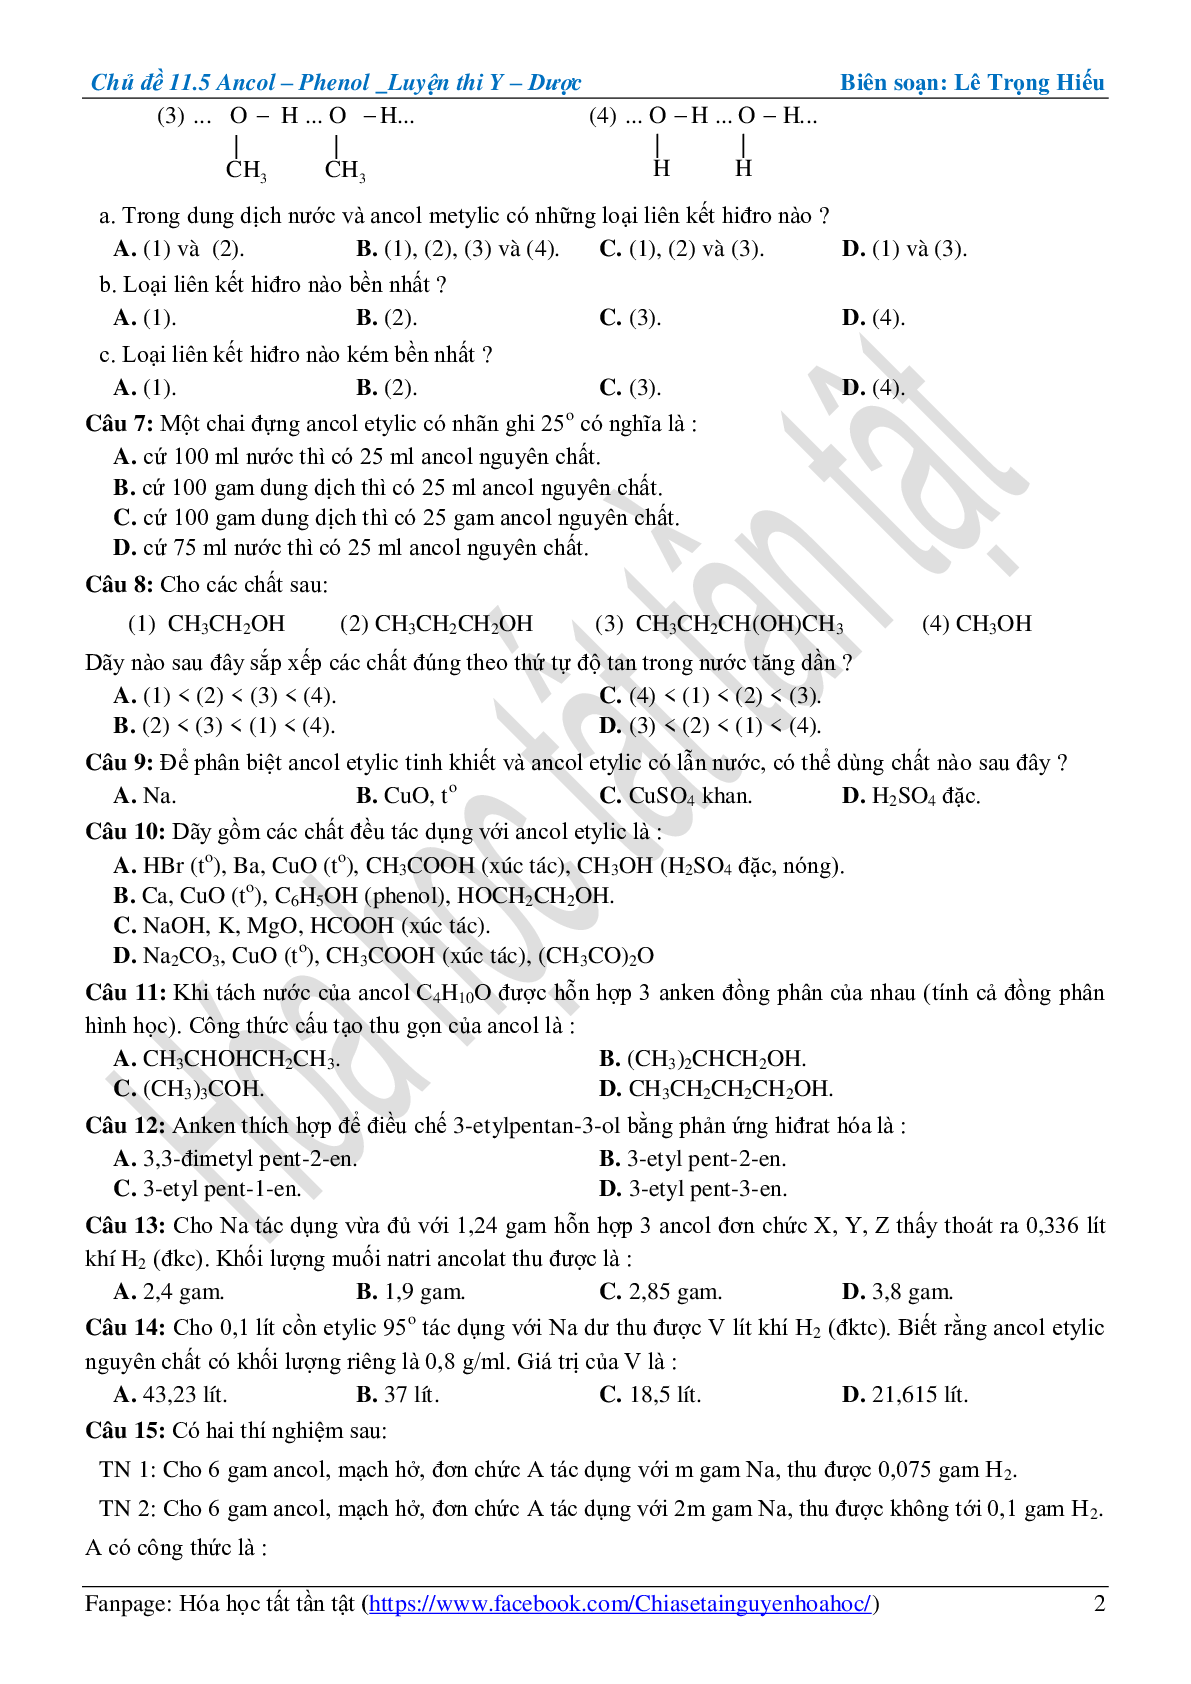 Bài tập về ancol-phenol cơ bản, nâng cao (trang 2)